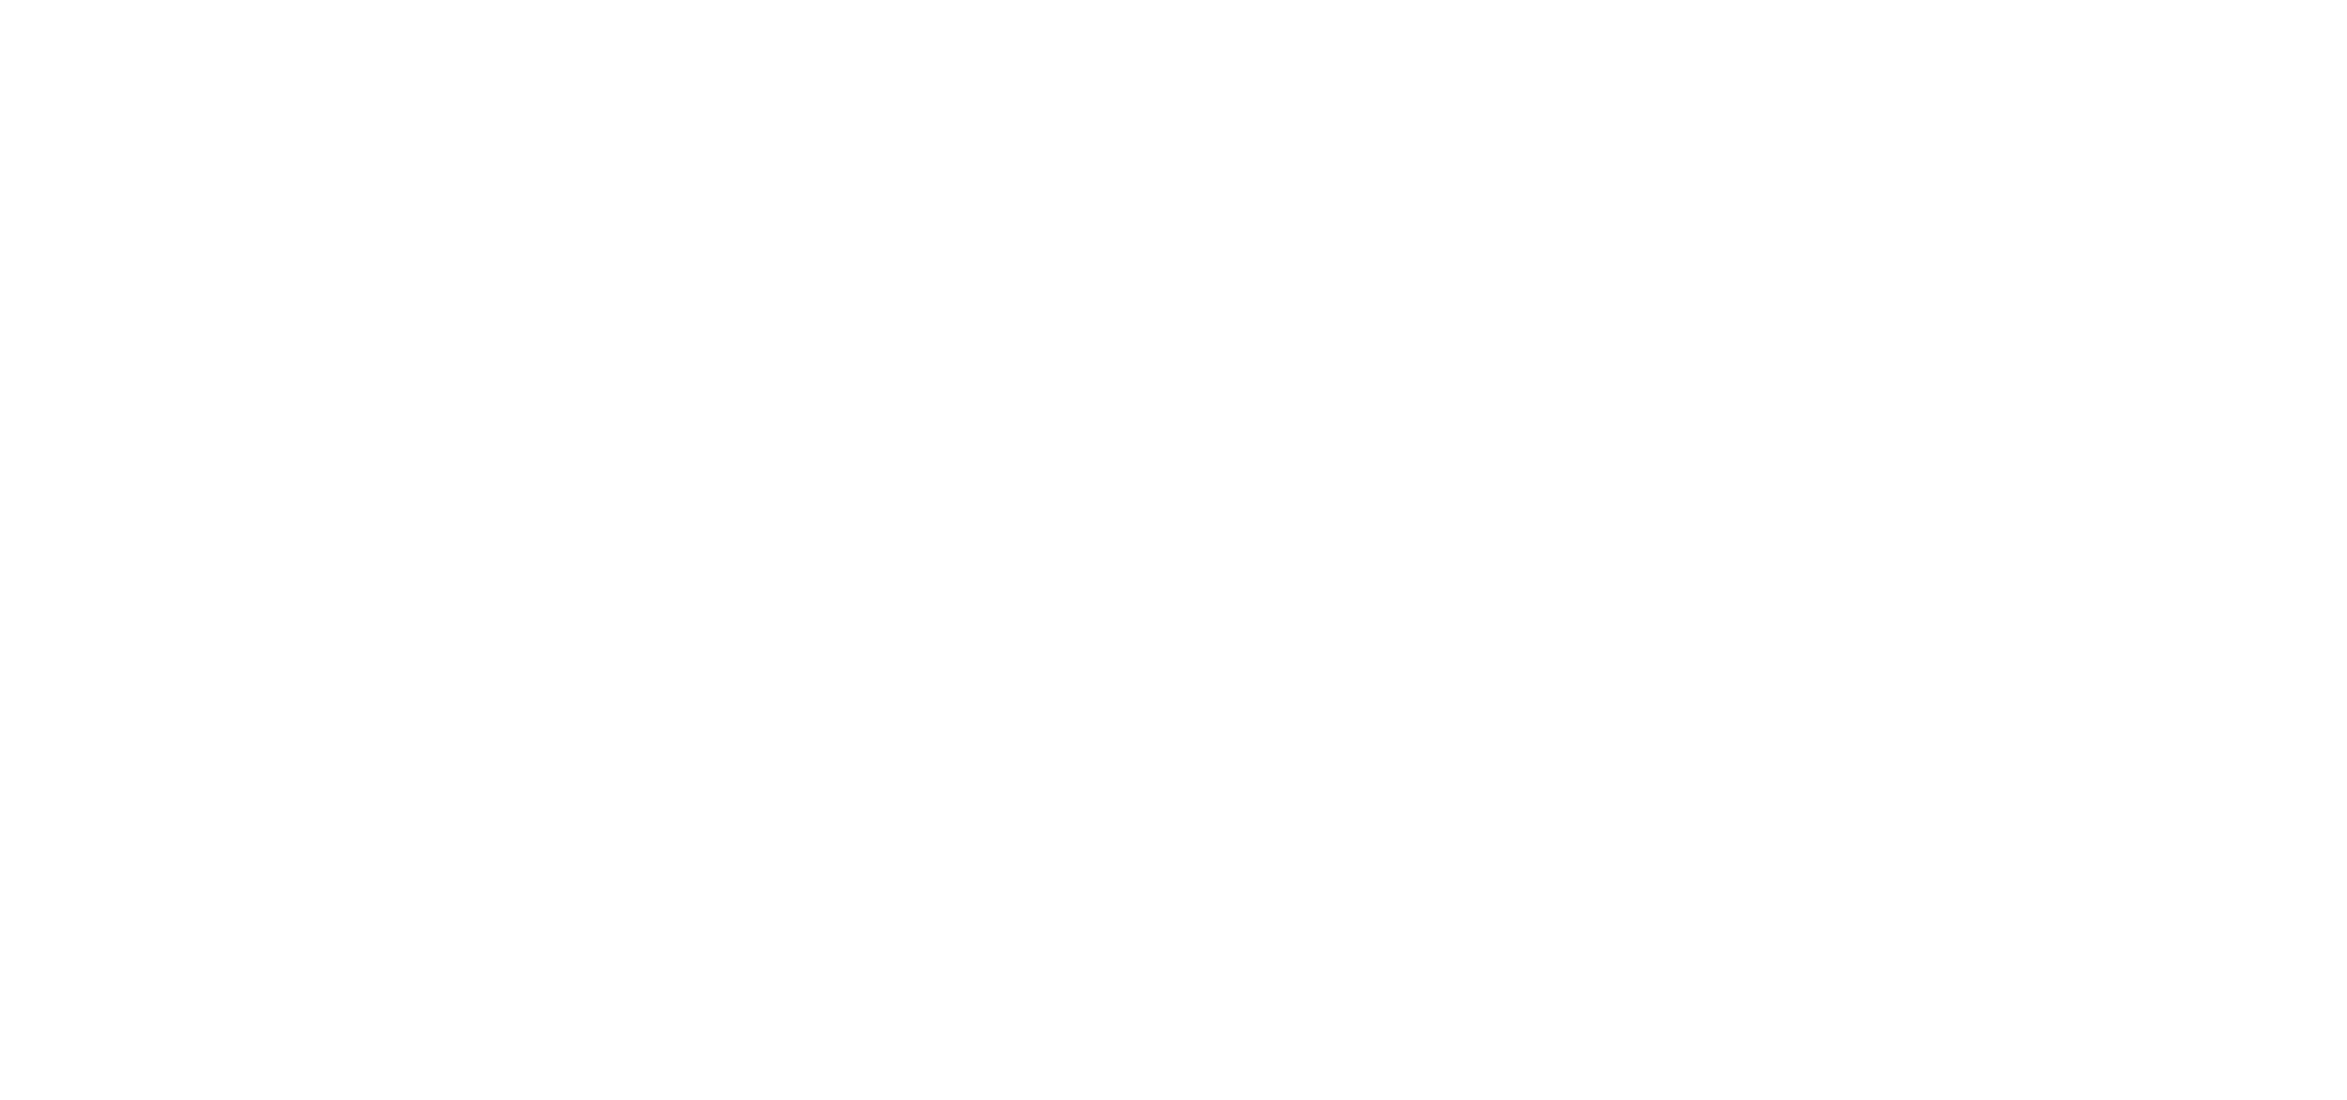 Camp Hometown Heroes